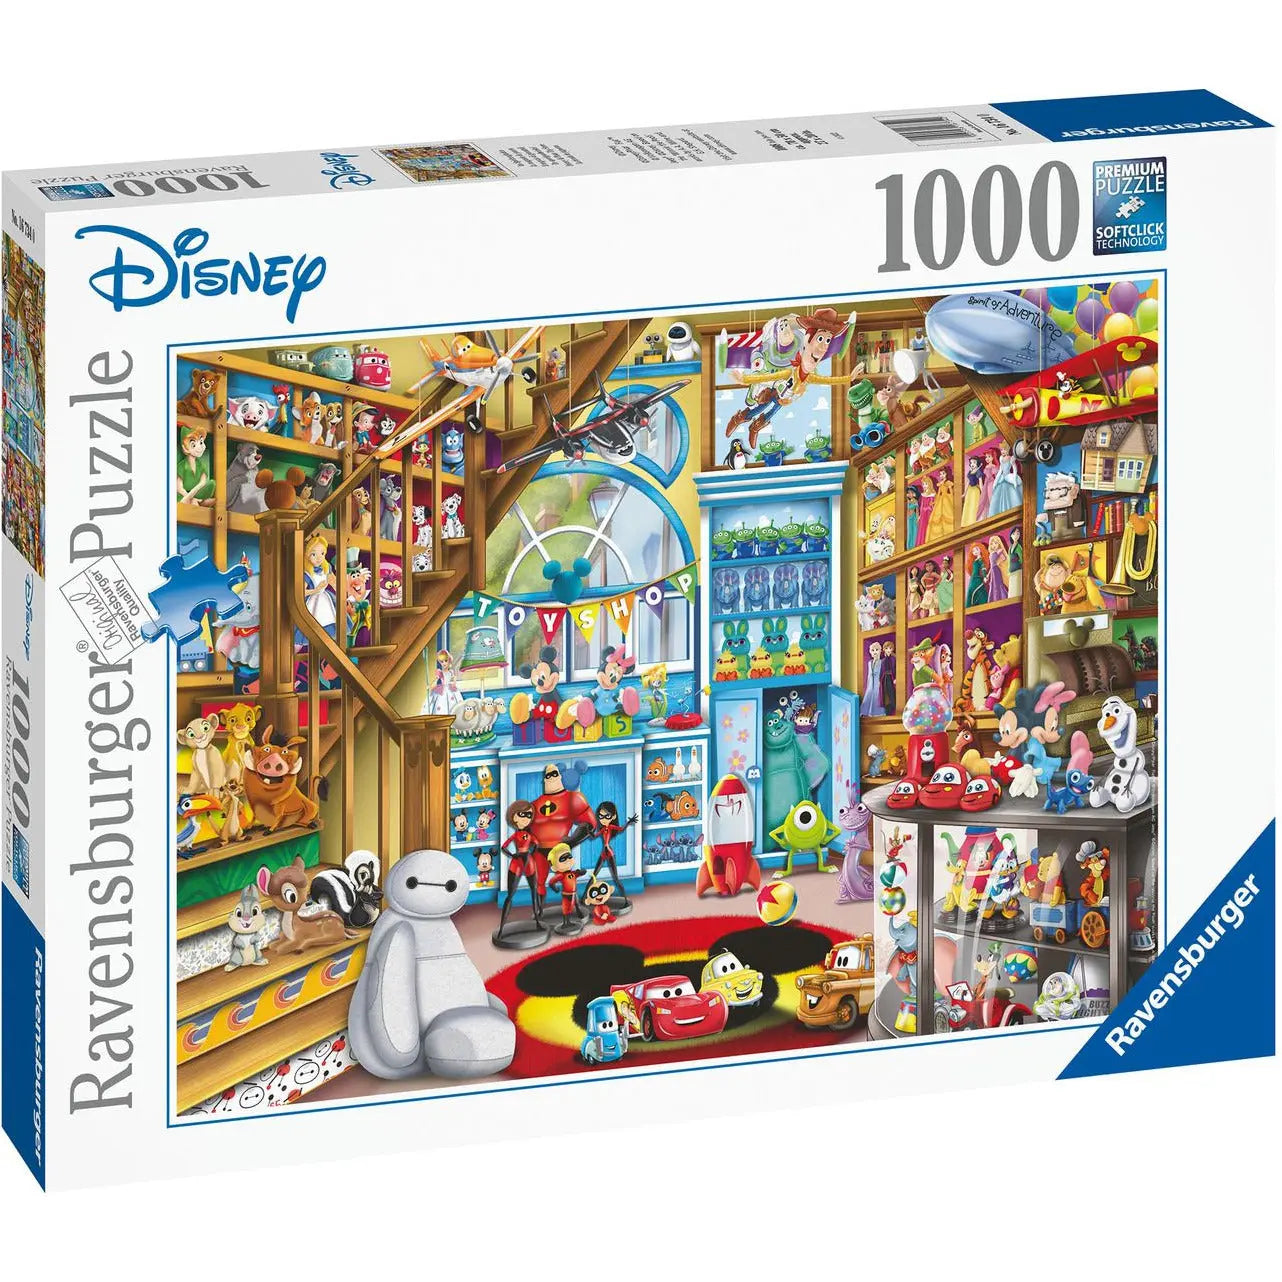 Ravensburger Disney Pixar Toy Story 4, XXL 100 piece Jigsaw Puzzle